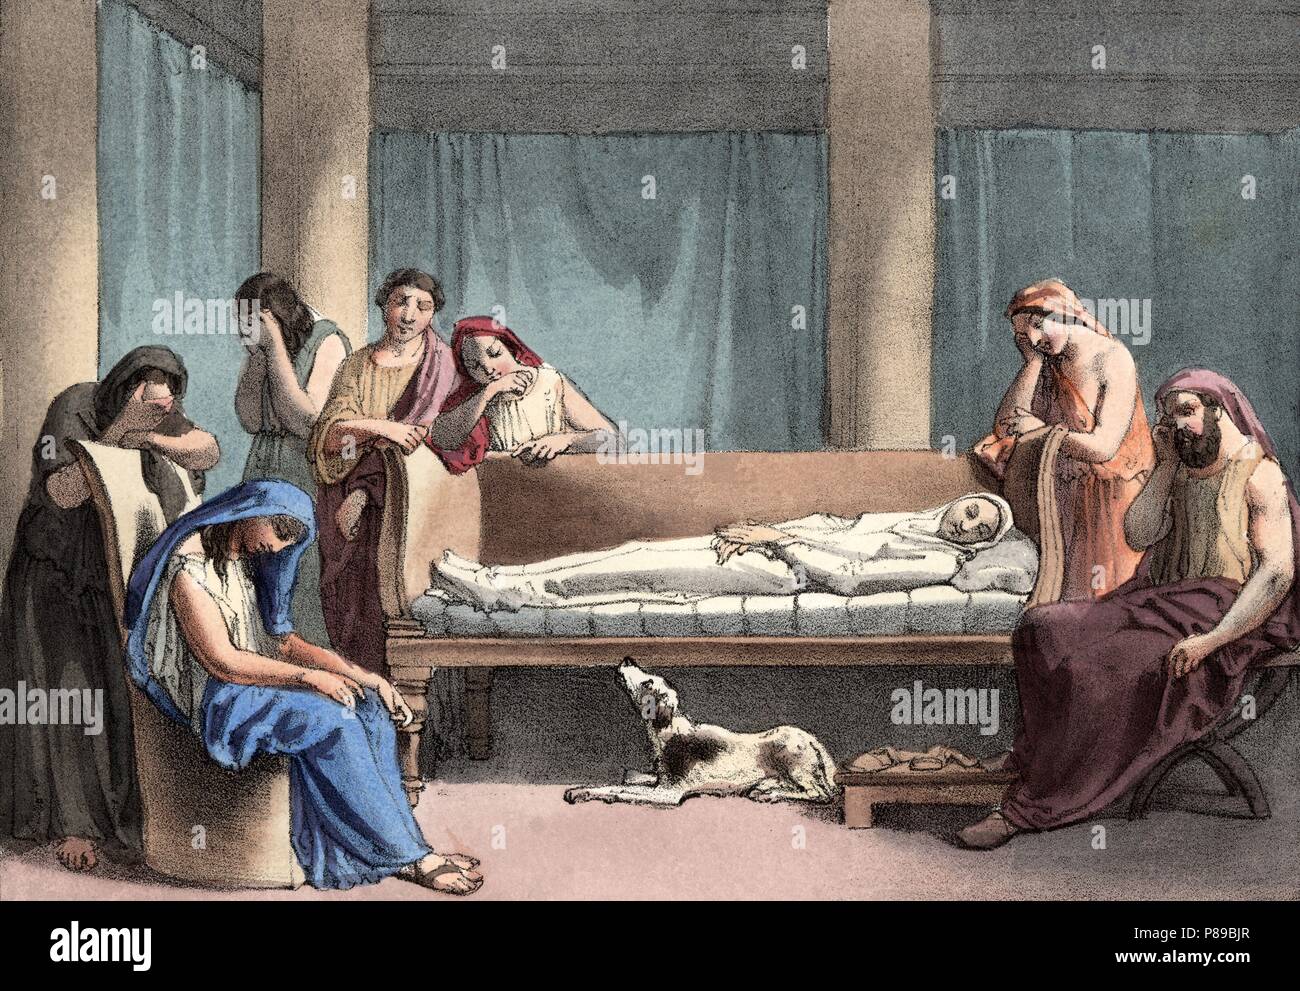 Roma. Edad antigua. Duelo familiar por la muerte de una joven romana. Grabado de 1900. Stock Photo